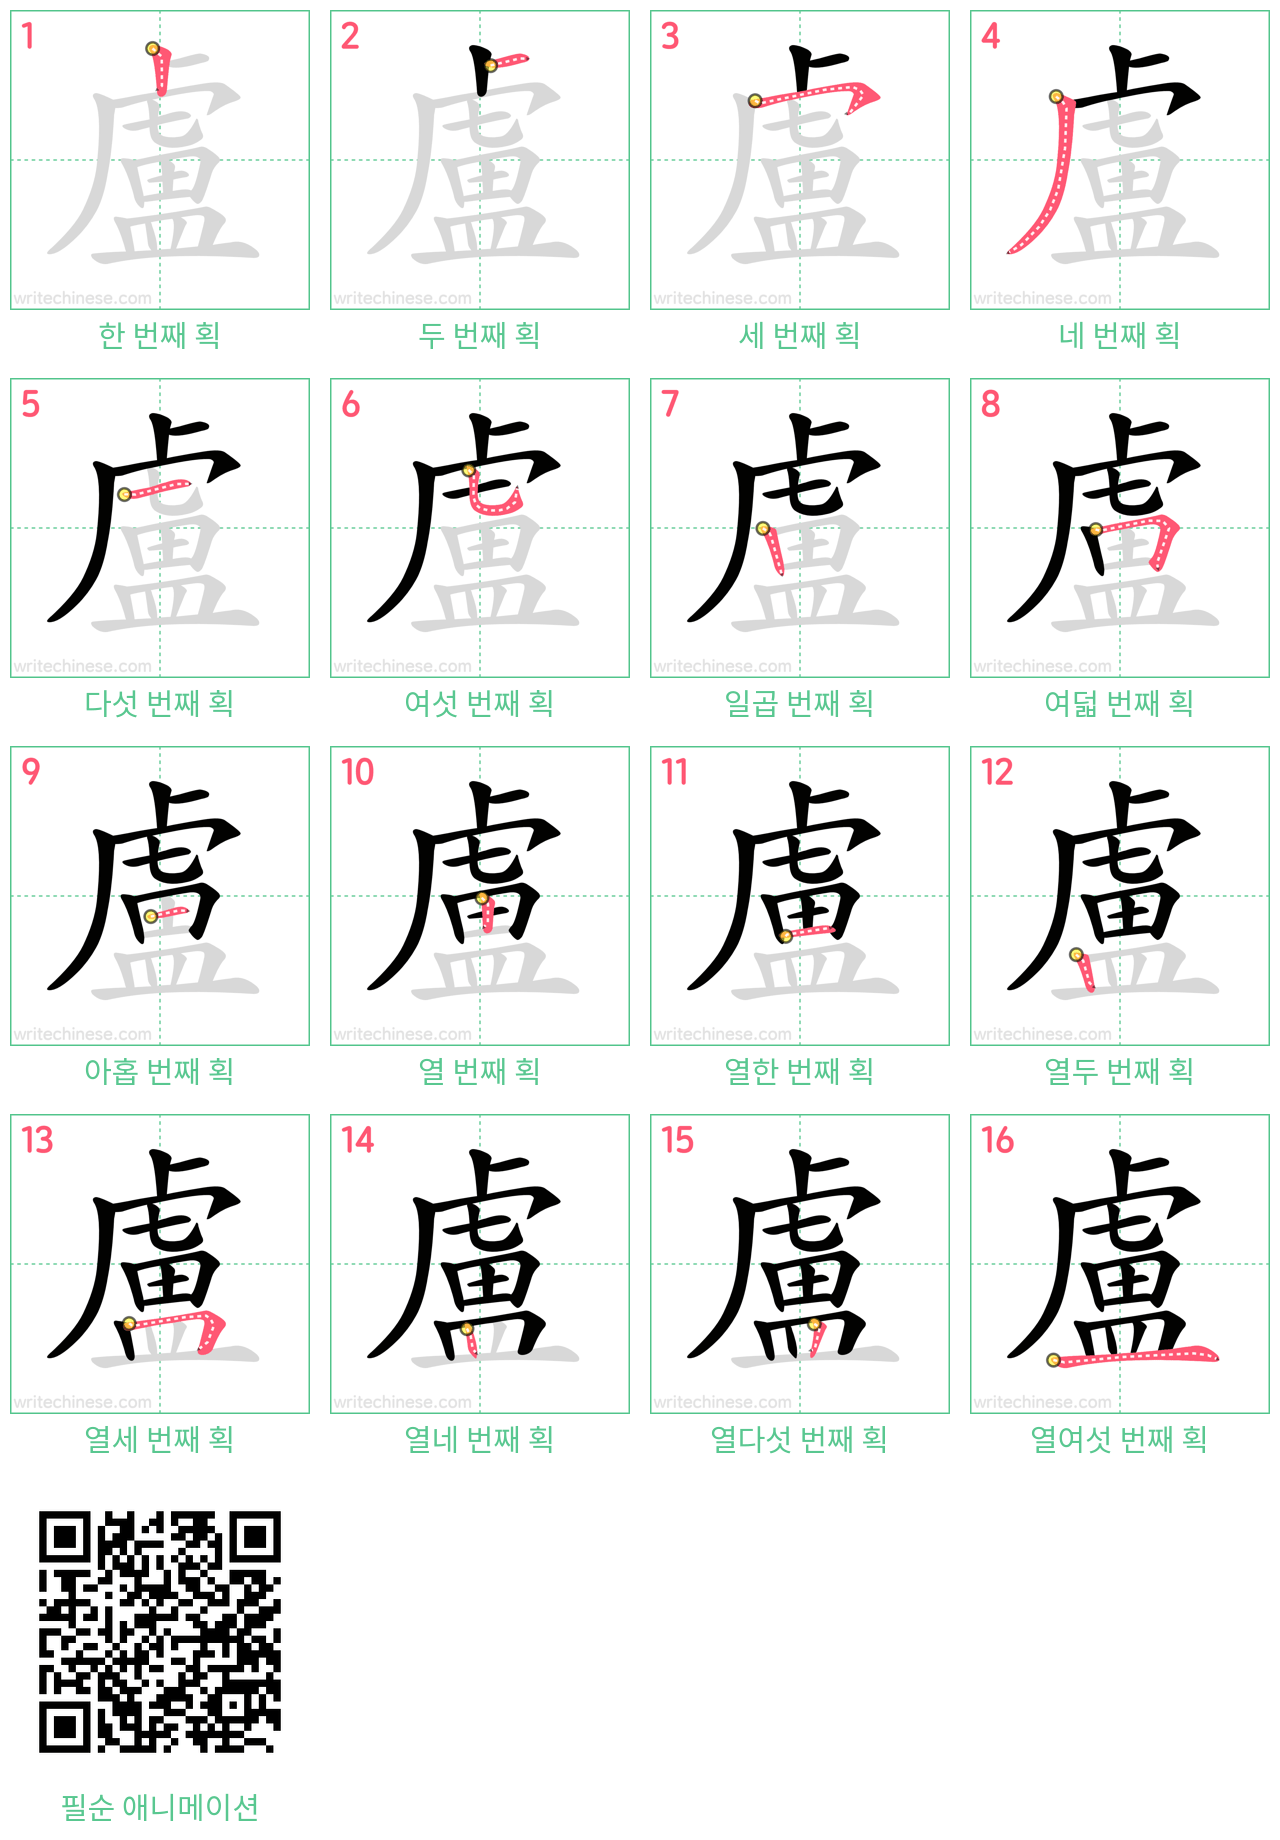 盧 step-by-step stroke order diagrams